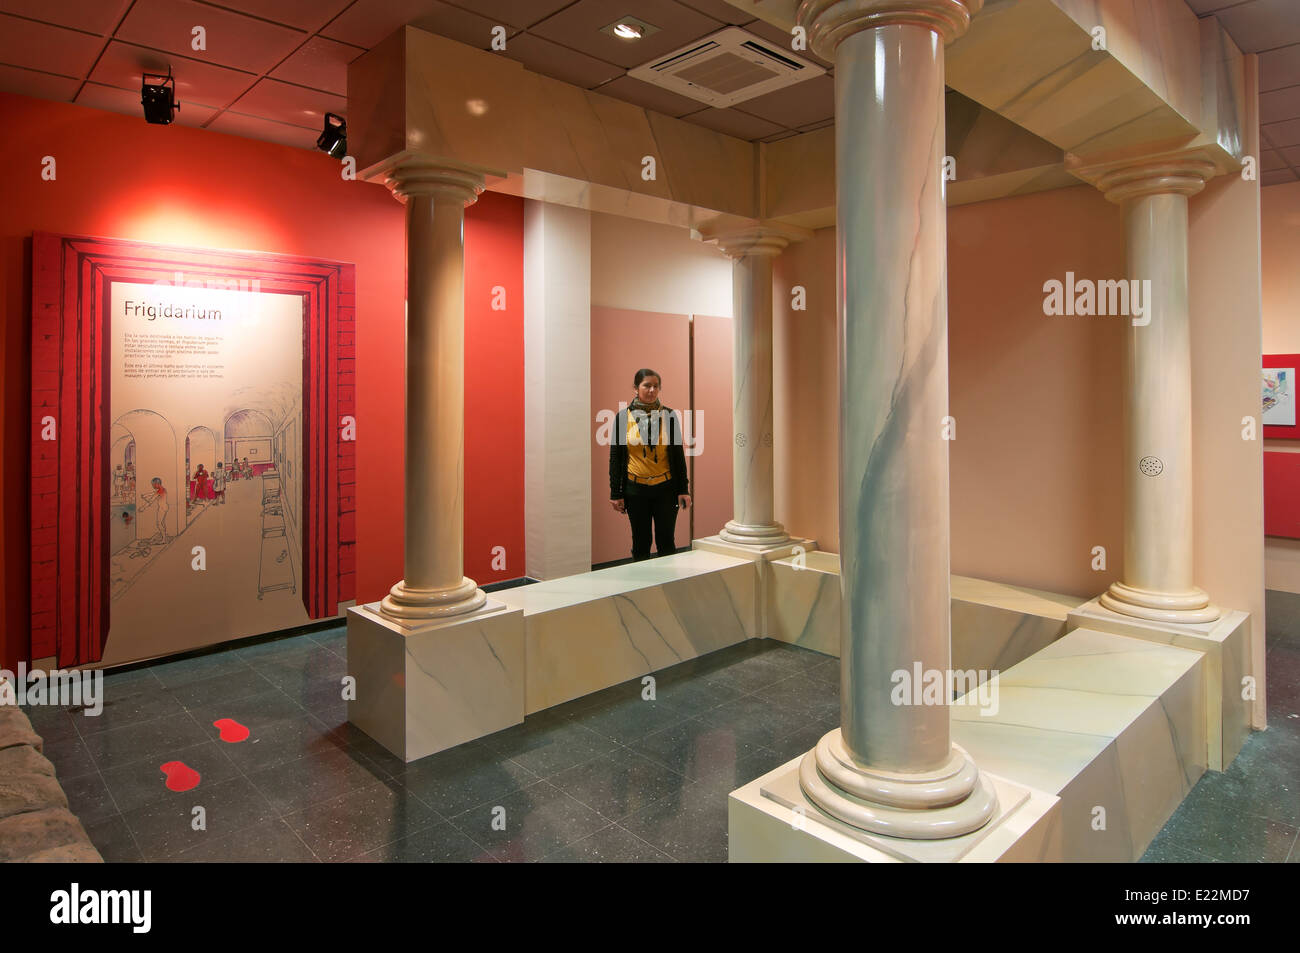 Centro tematico di bagni romani, il percorso turistico dei banditi, Alameda, provincia di Malaga, regione dell'Andalusia, Spagna, Europa Foto Stock